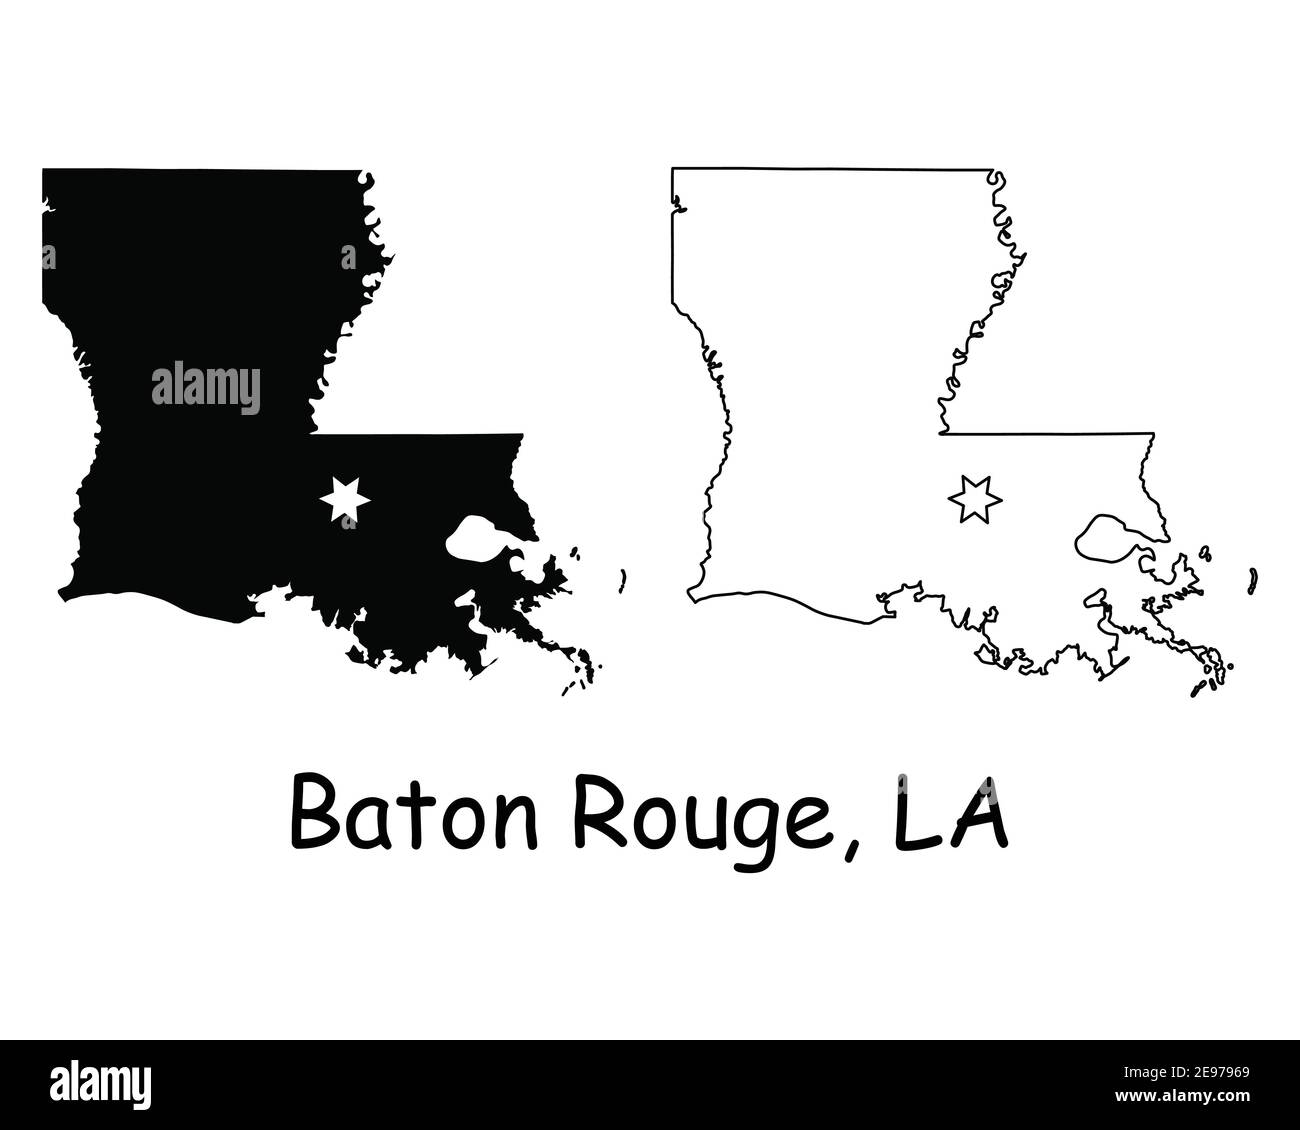 Louisiana LA State Karte USA mit Capital City Star in Baton Rouge. Schwarze Silhouette und Umriss isoliert auf weißem Hintergrund. EPS-Vektor Stock Vektor